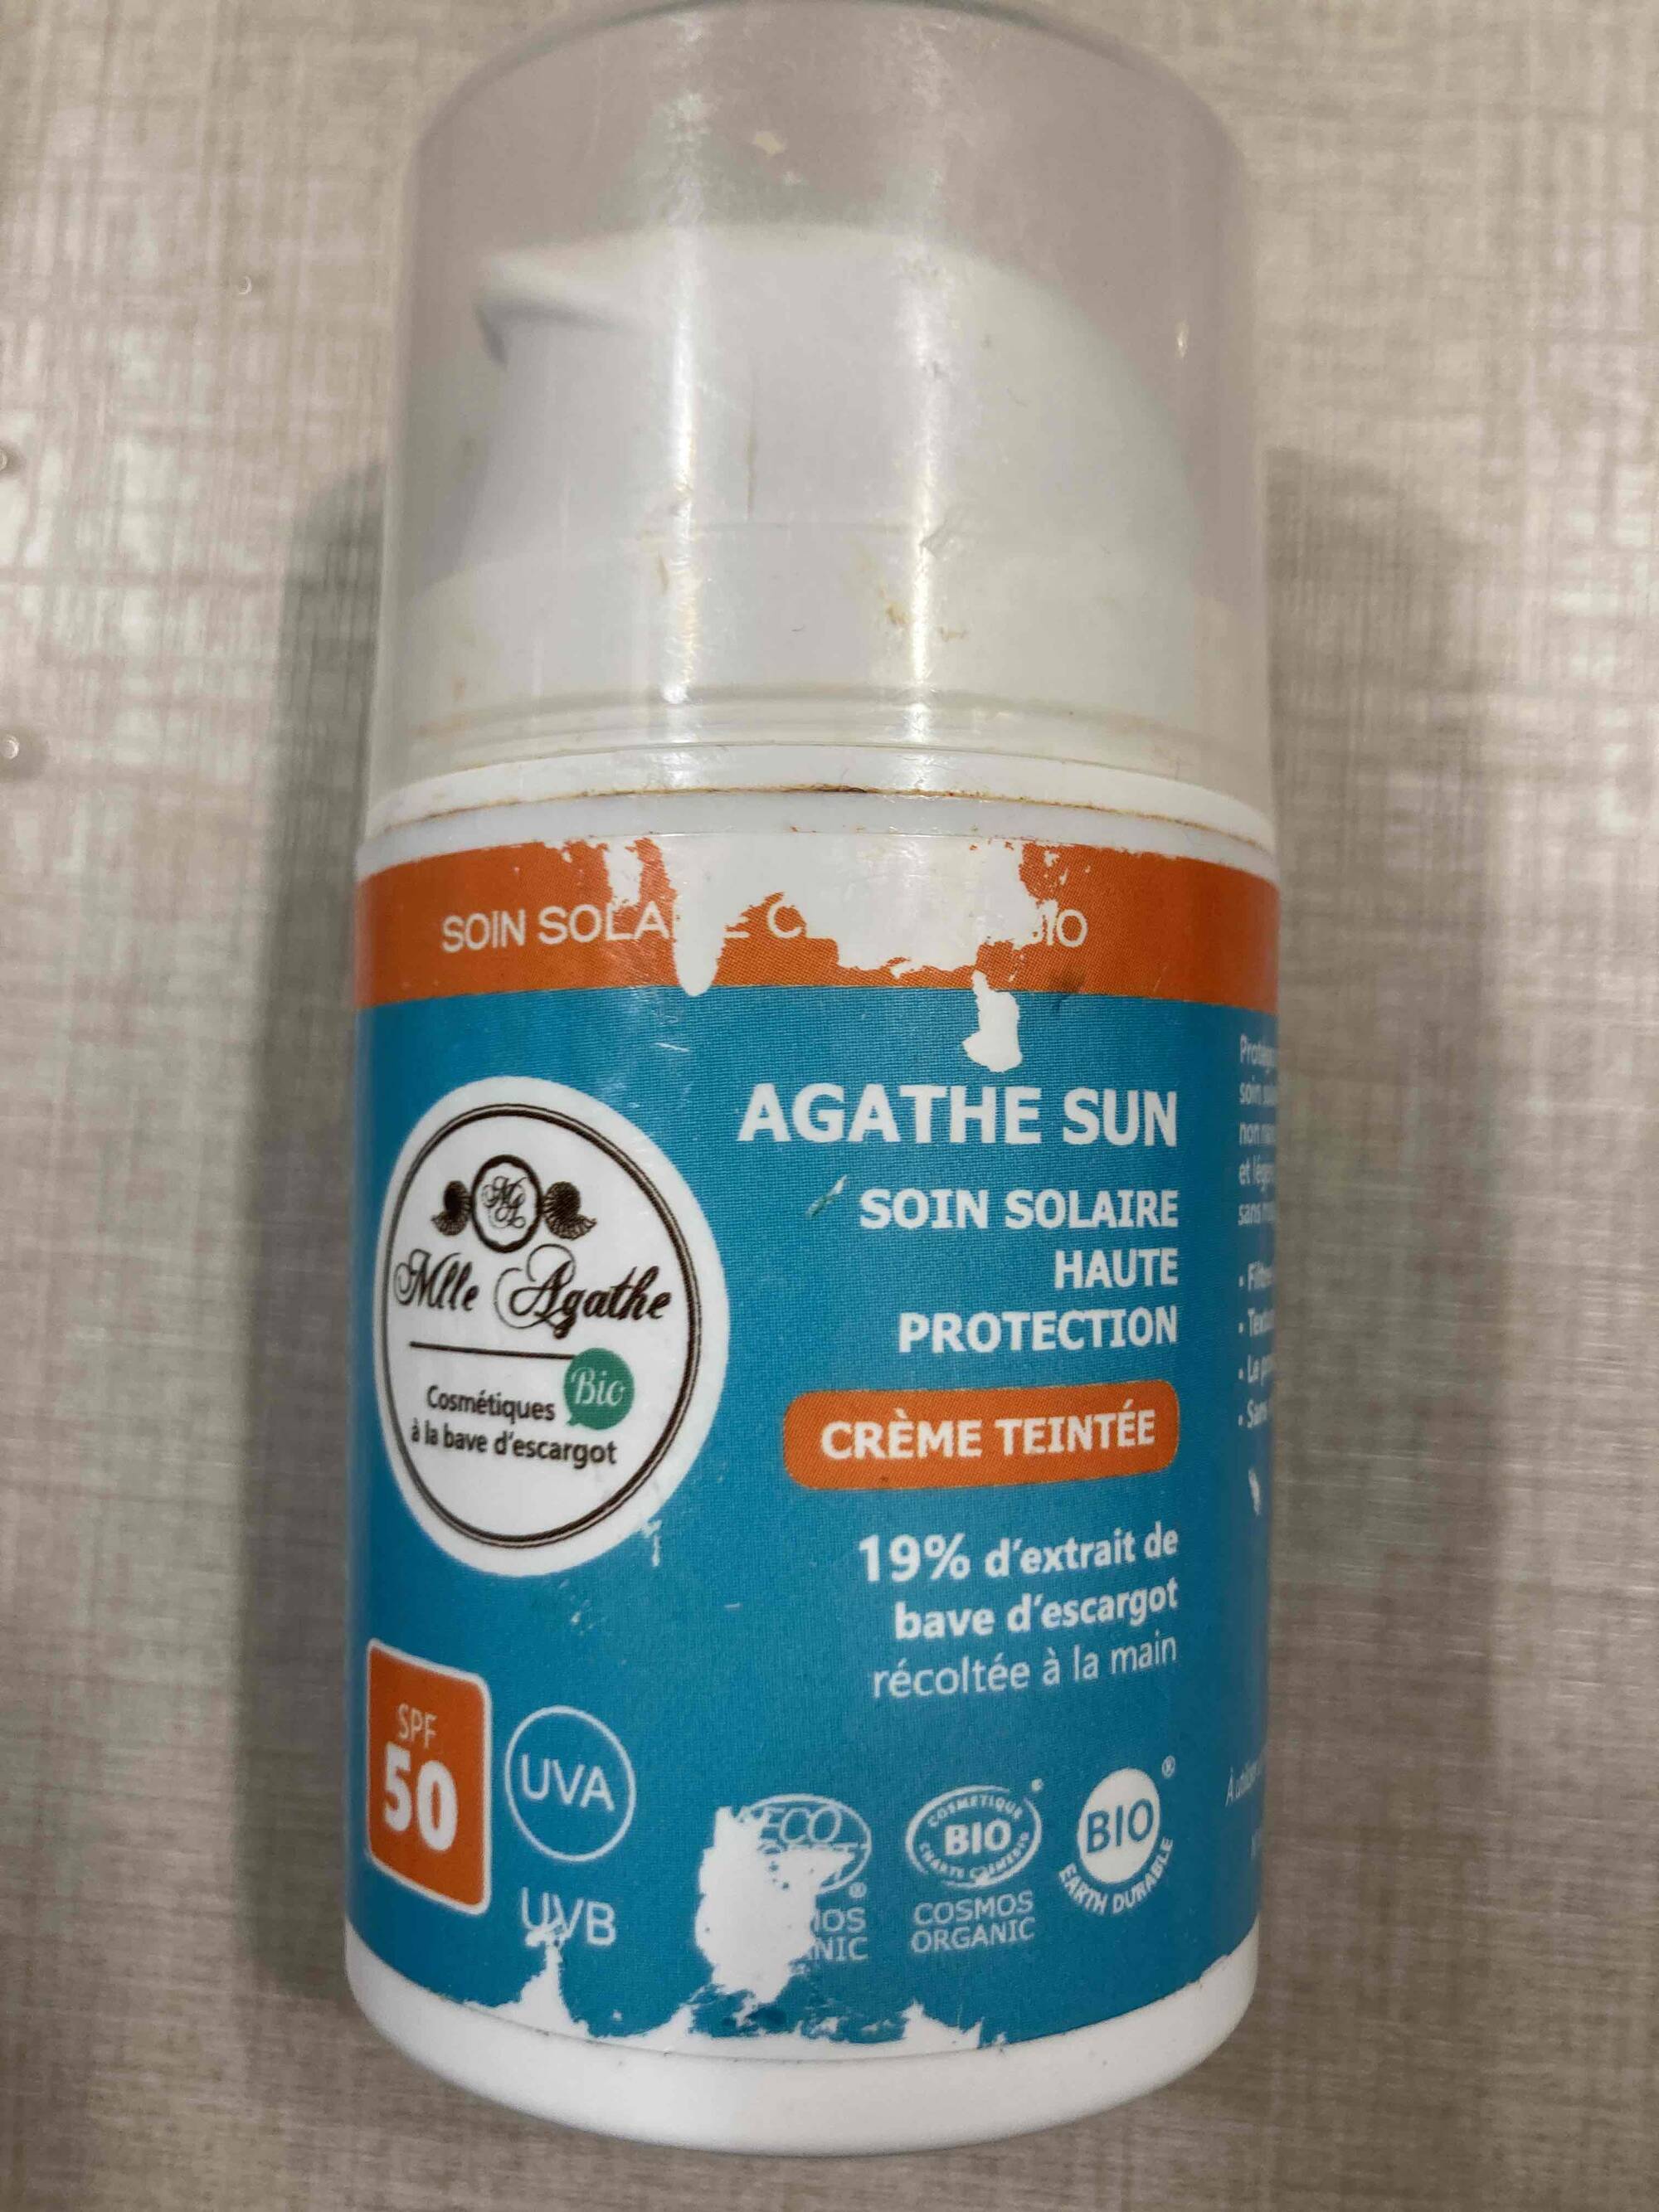 MLLE AGATHE - Agathe sun - Soin solaire crème teintée SPF 50